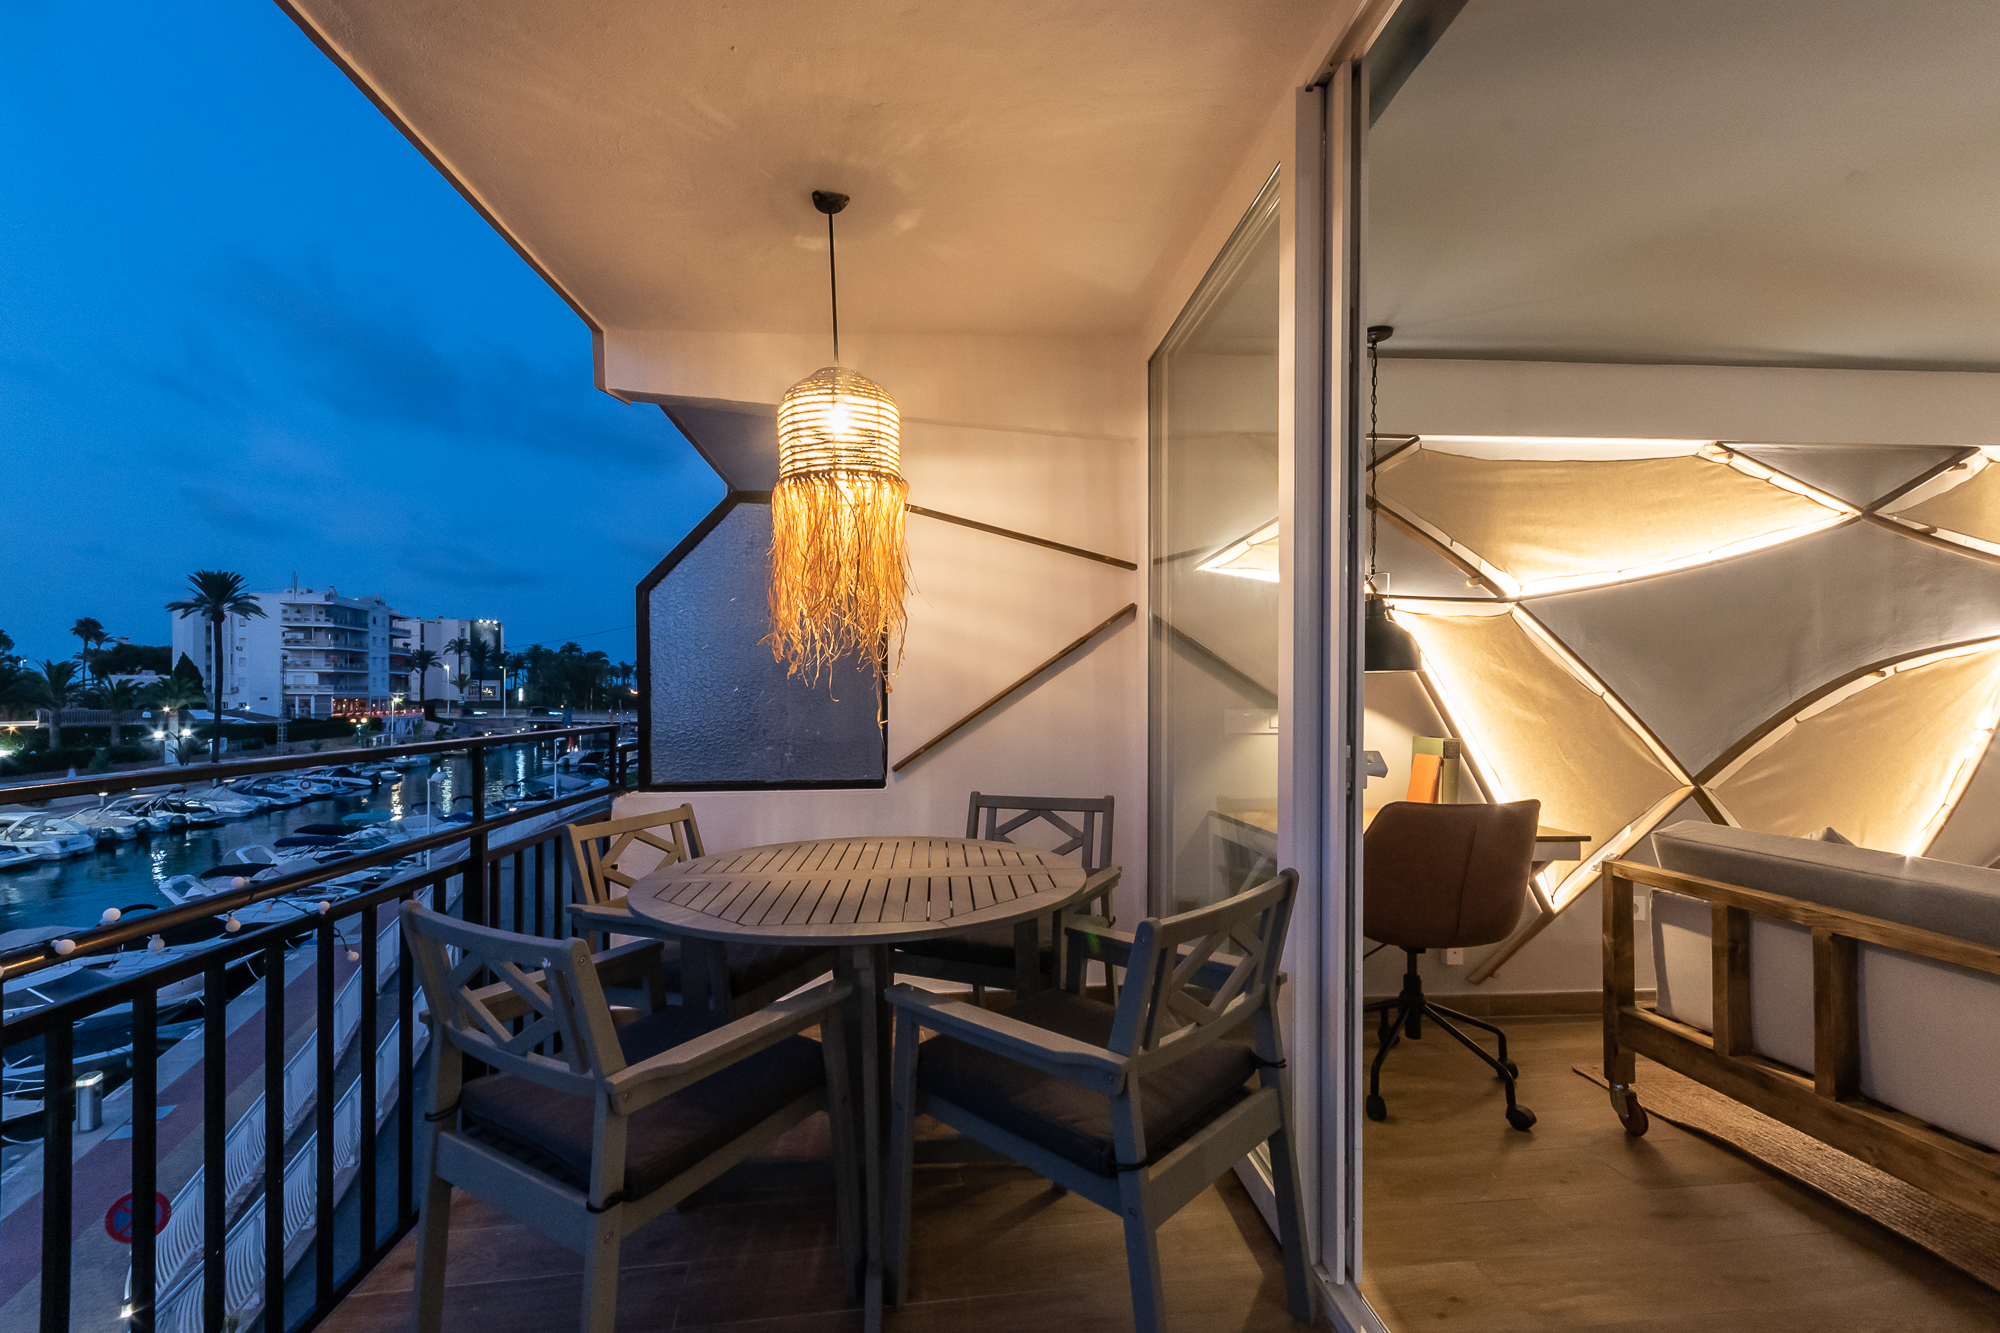 Mooi gerenoveerd appartement met uitzicht op het kanaal en honderd meter van het strand